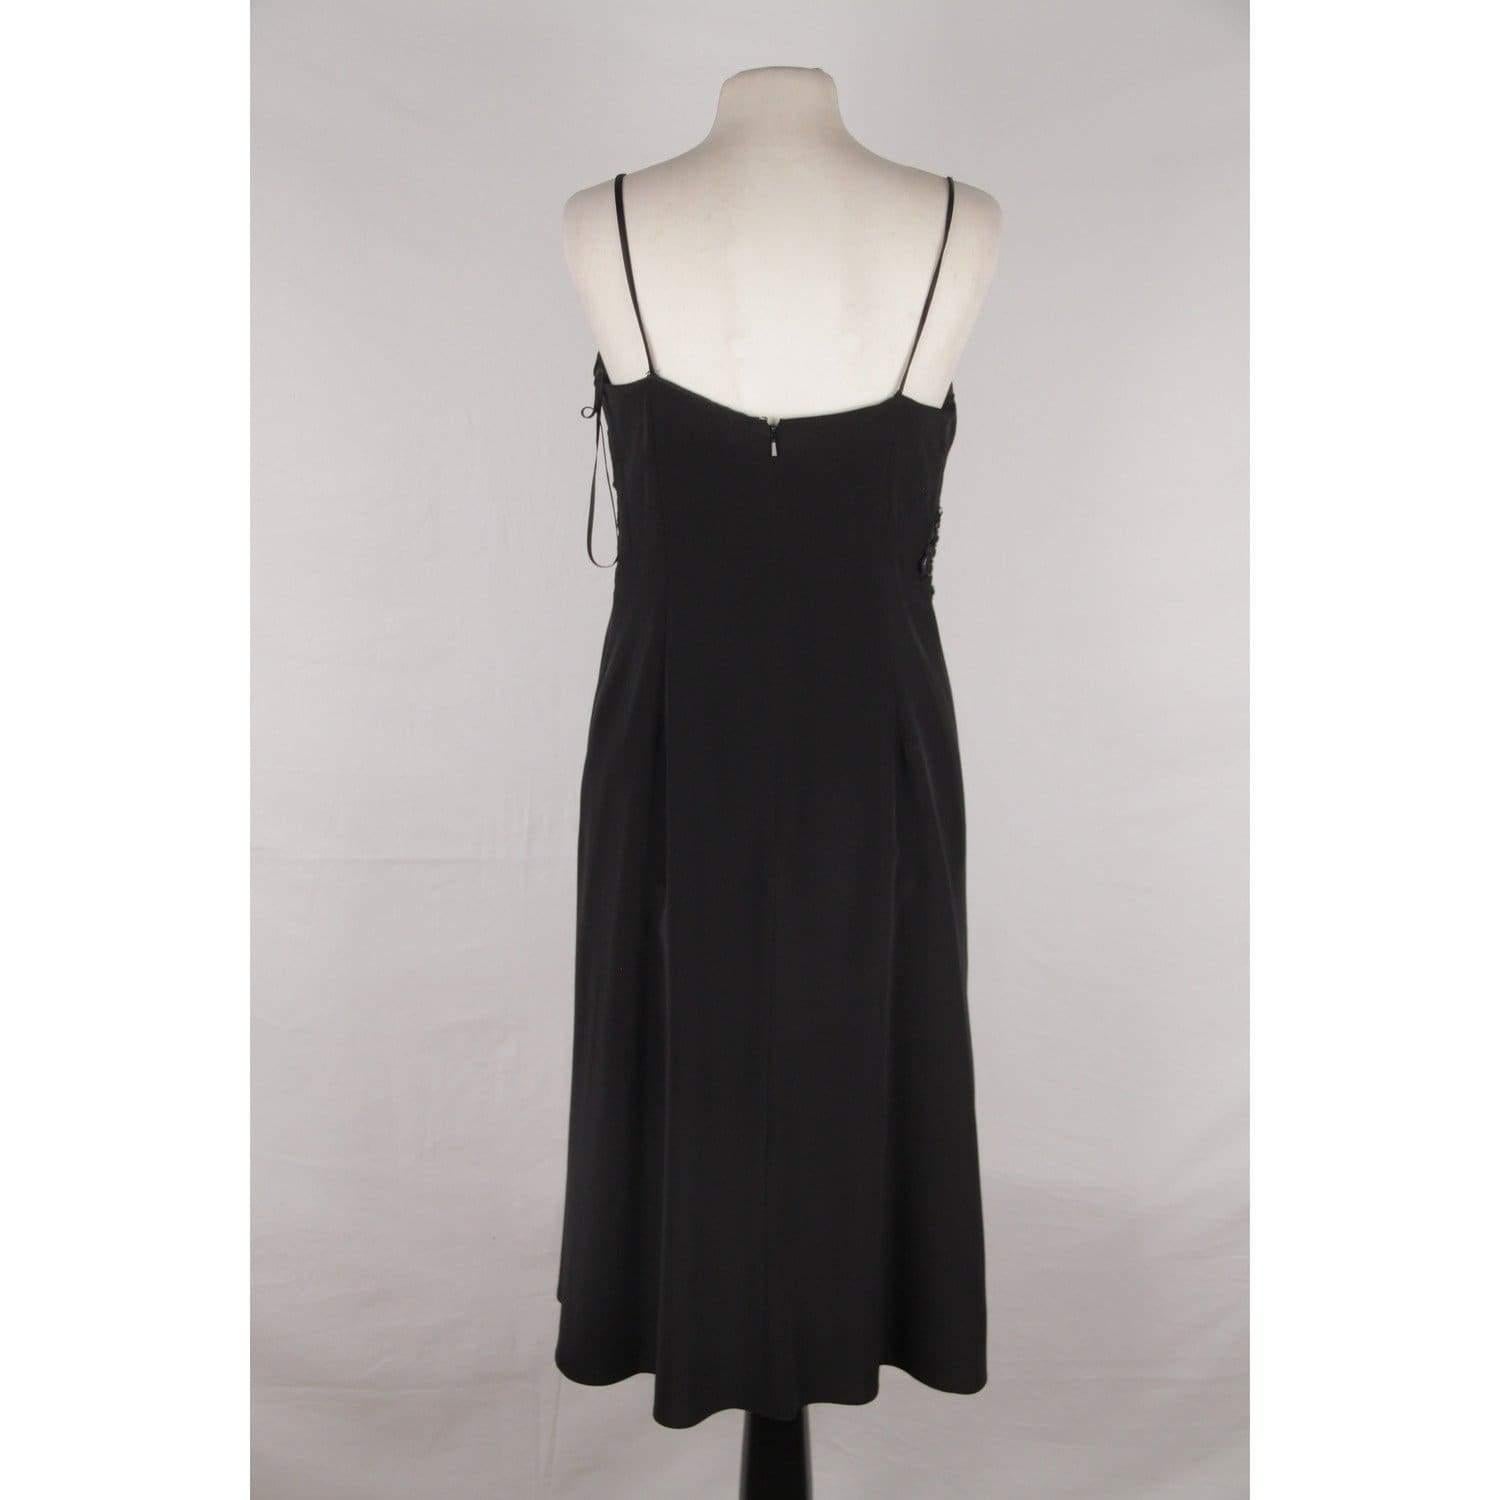 ETHNE Black EVENING Midi Cocktail Embellished DRESS Size 44 1